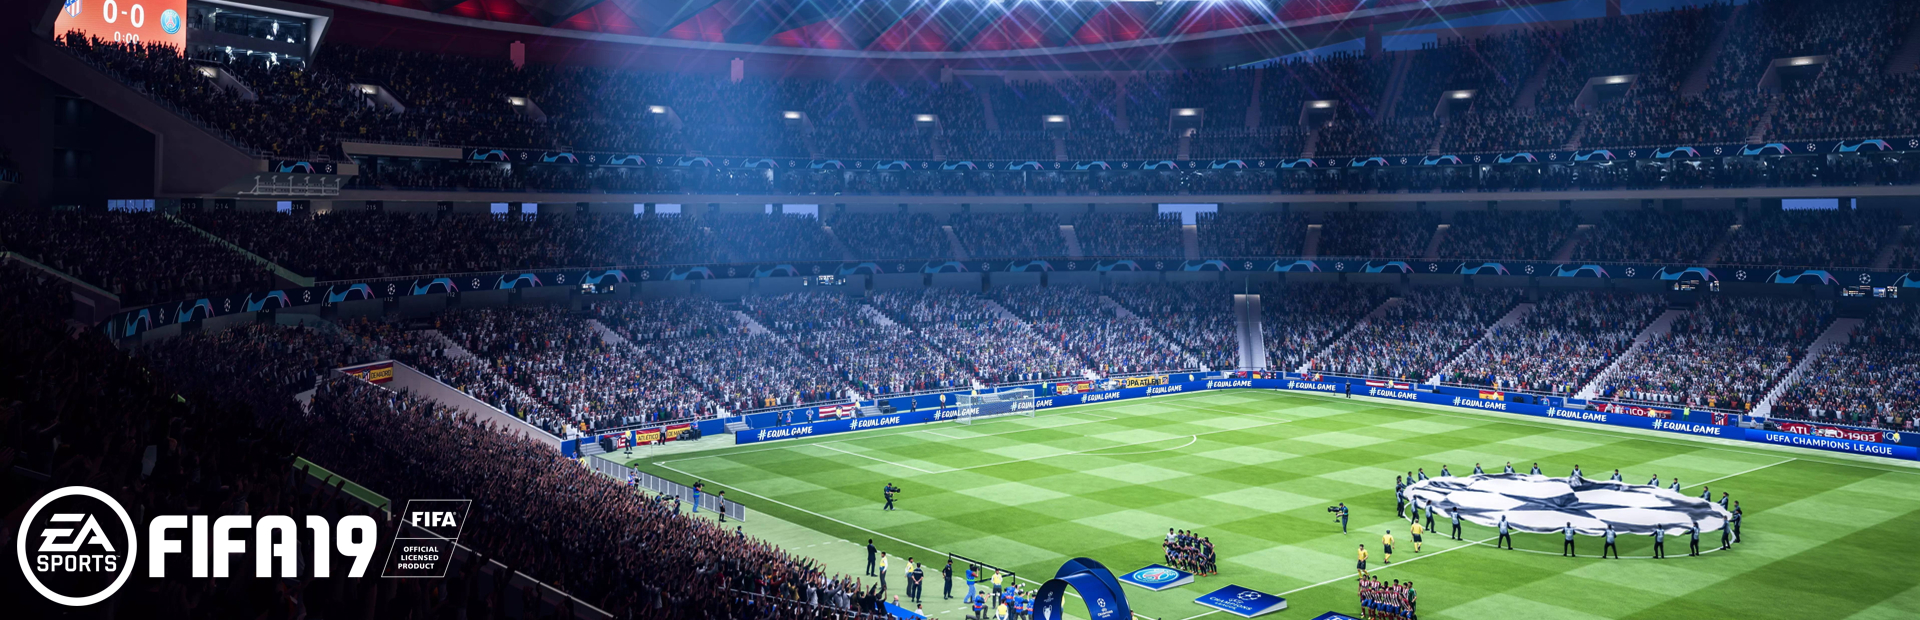 دانلود بازی FIFA 19 برای PC | گیمباتو